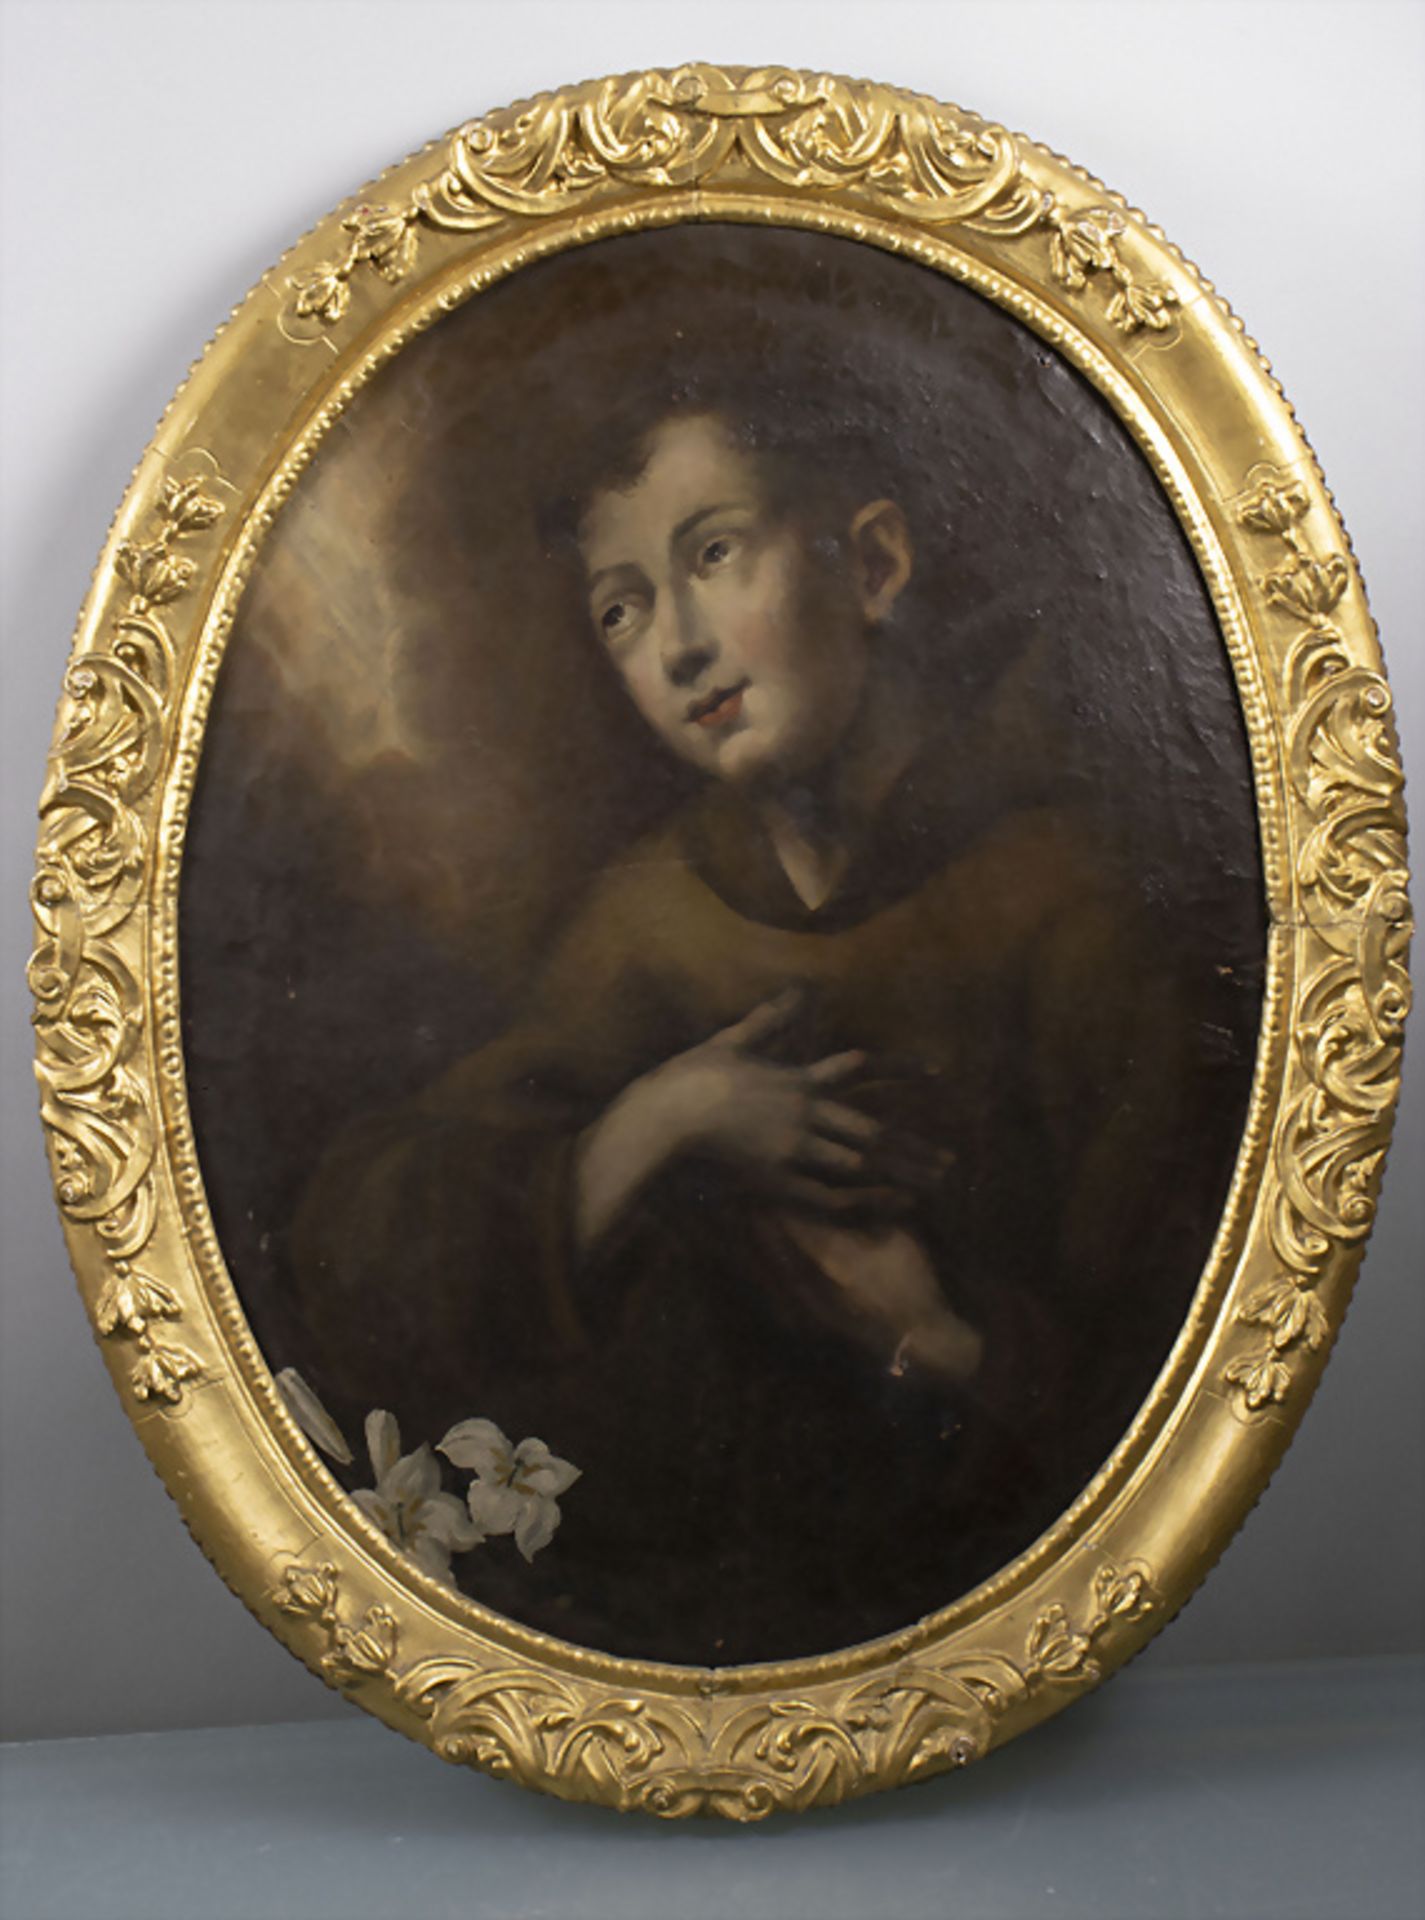 Unbekannter Künstler des 18. Jh., 'Heiliger Antonius von Padua' / 'St. Anthony of Padua' - Bild 2 aus 7